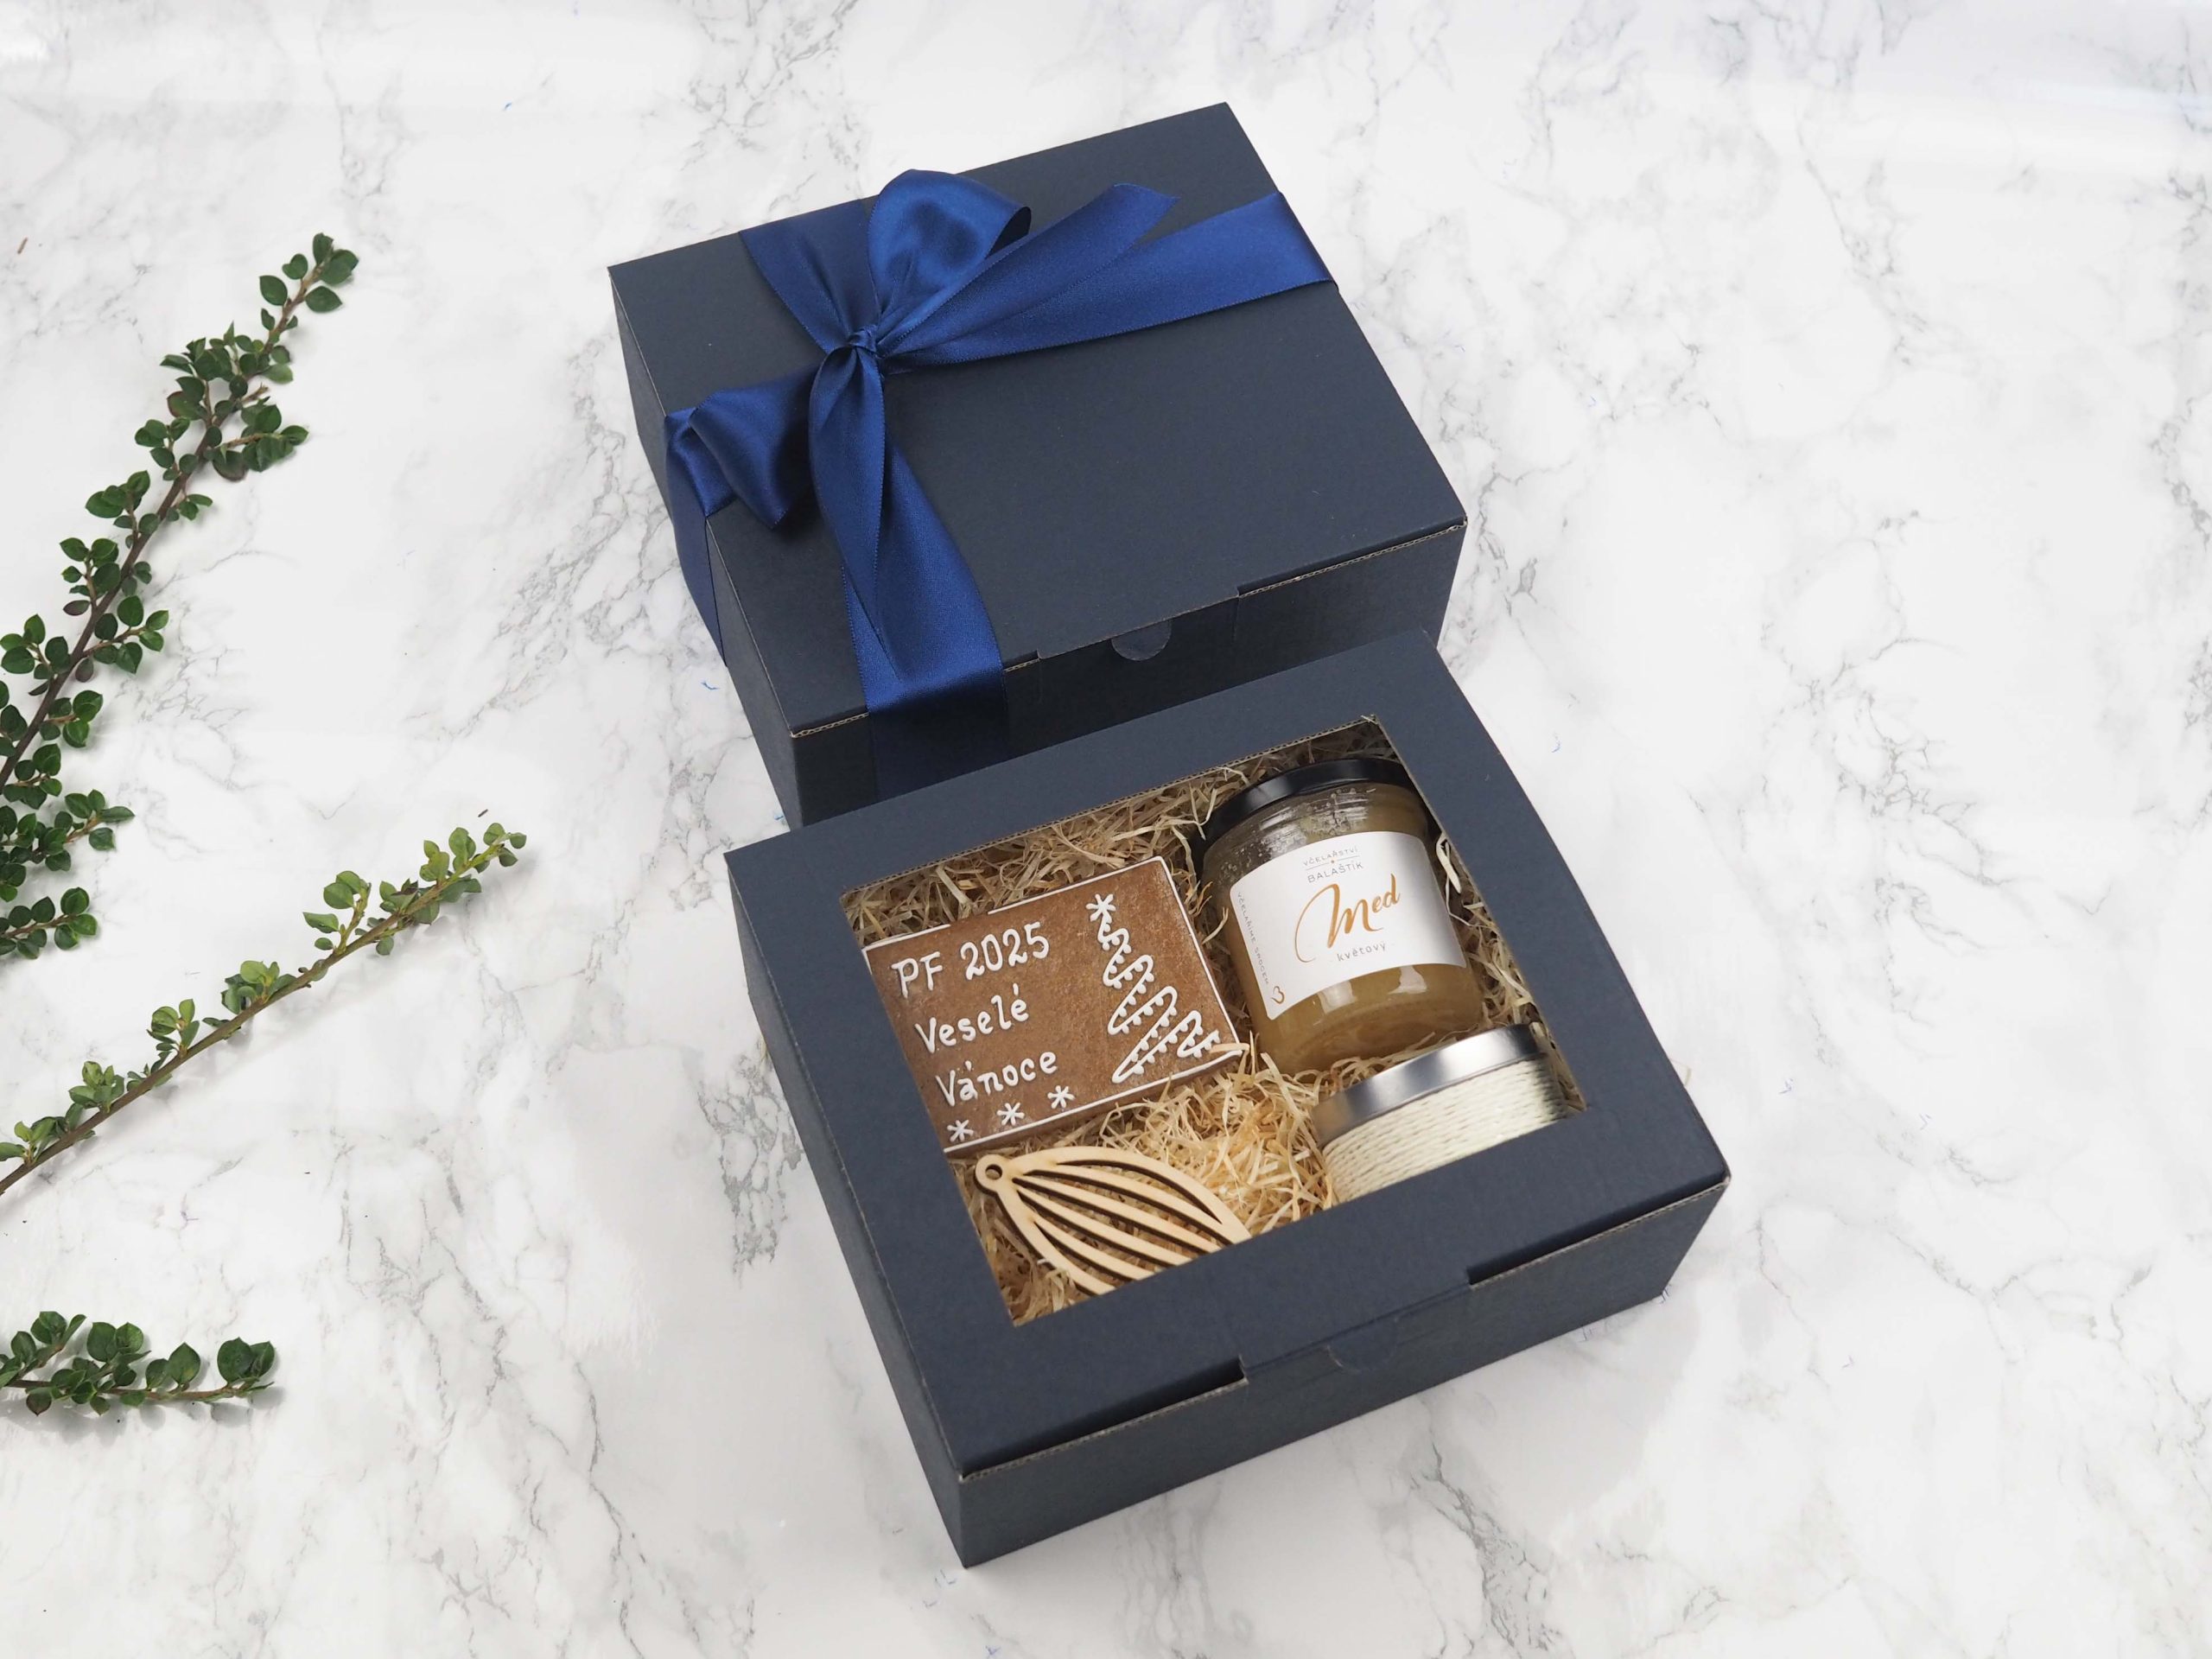 Dárkový balíček Medové potěšení v sobě obsahuje medový perníček s PF přáním, květový med, dřevěnou ozdobu a vanilkovou svíčku. Darujte luxusní balíček, který potěší každého obdarovaného.